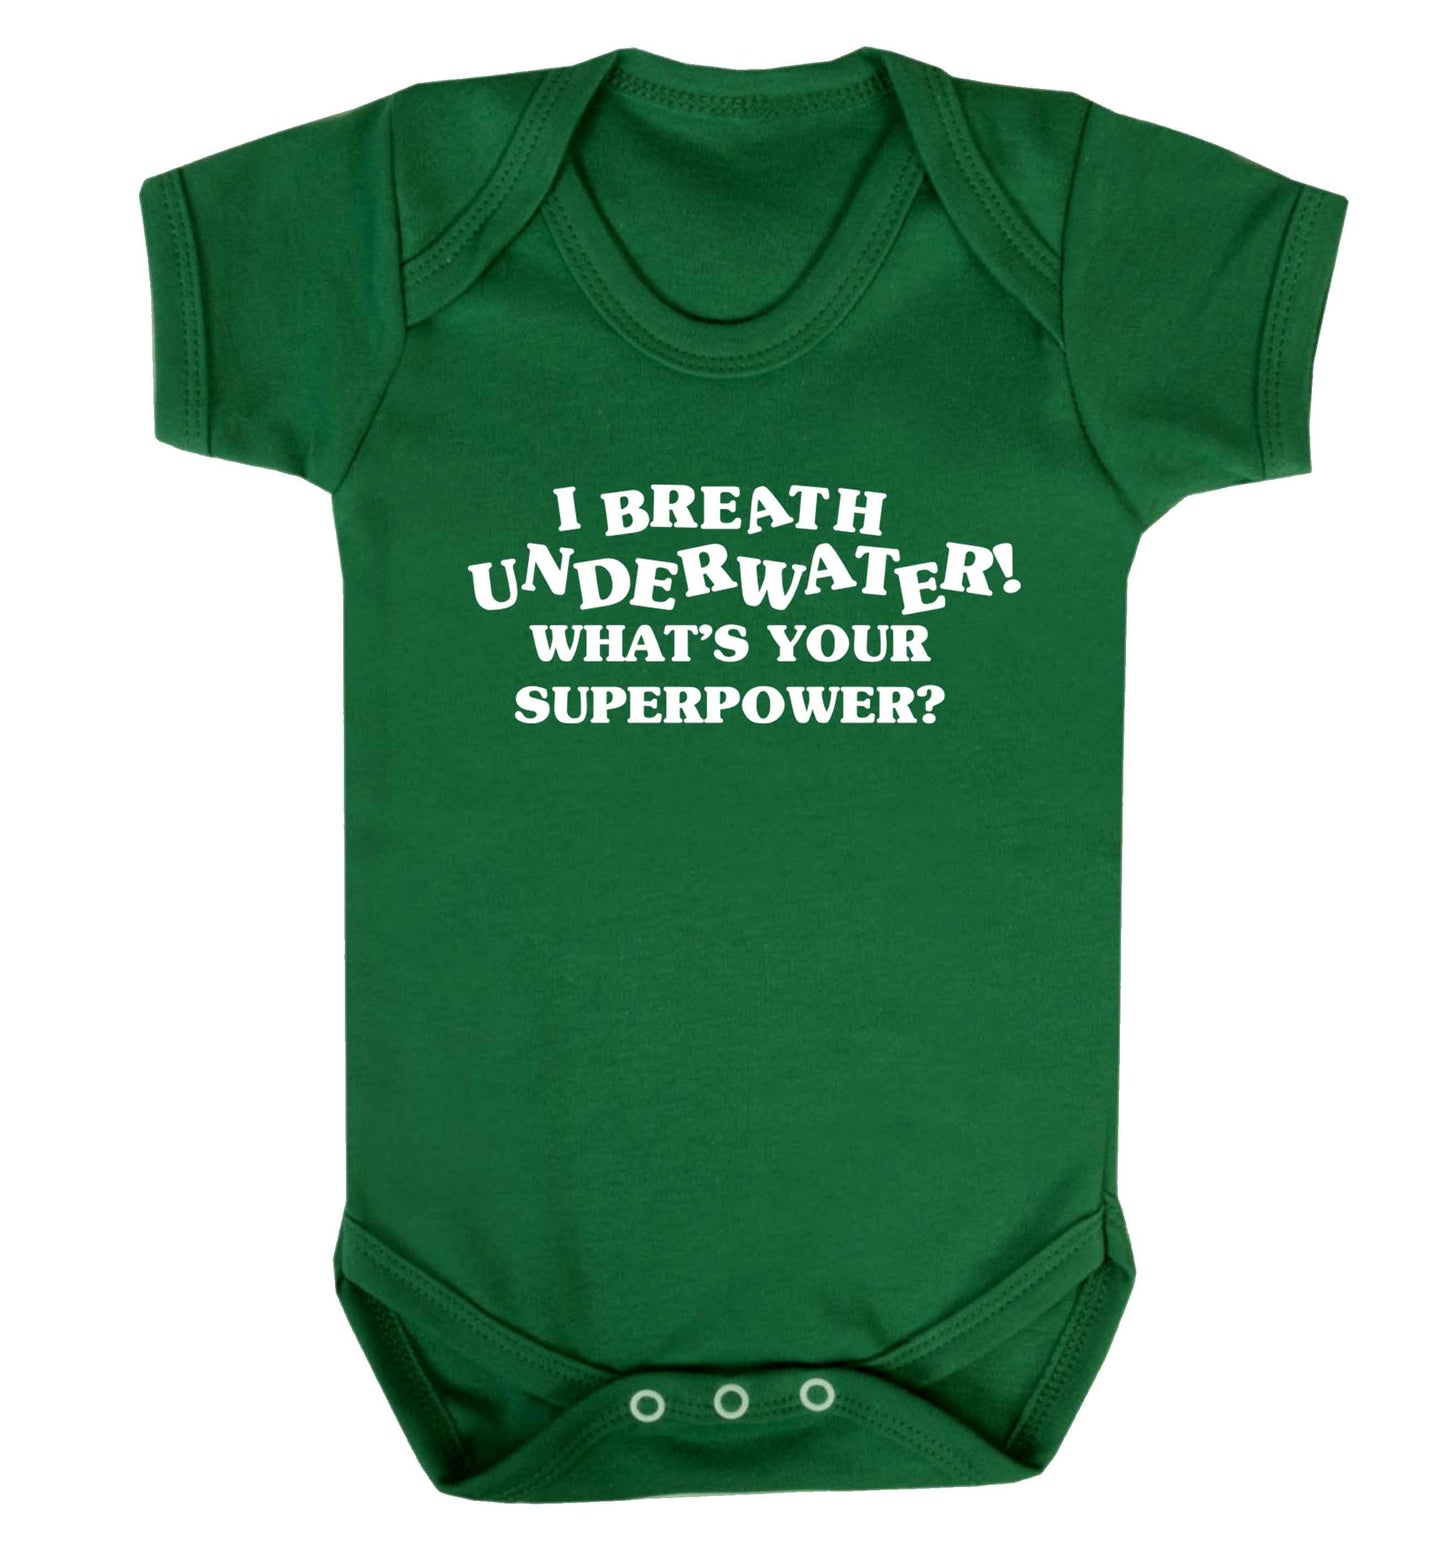 I breath underwater what's your superpower? Baby Vest green 18-24 months